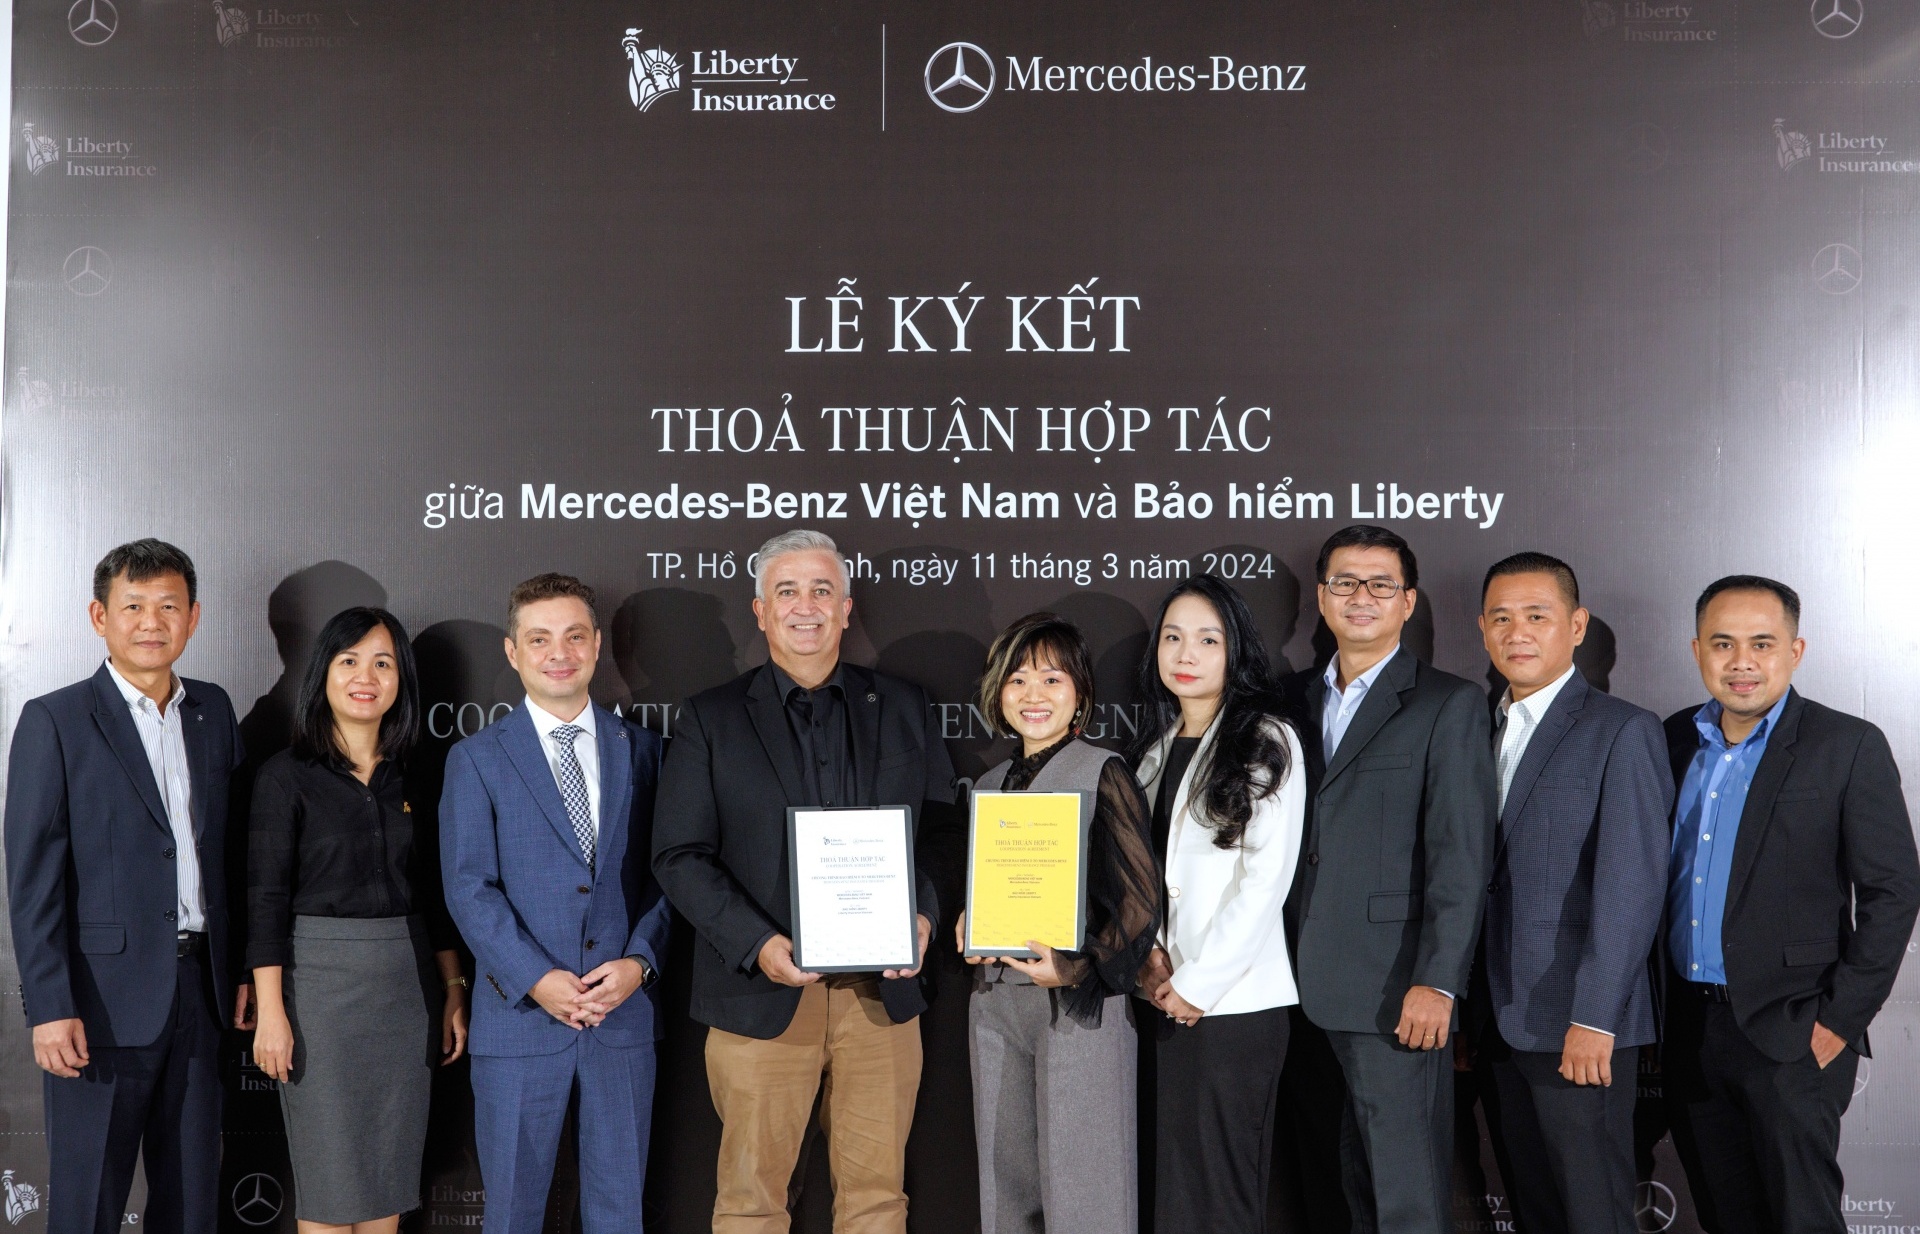 Liberty Insurance Vietnam and Mercedes-Benz Vietnam sign insurance deal